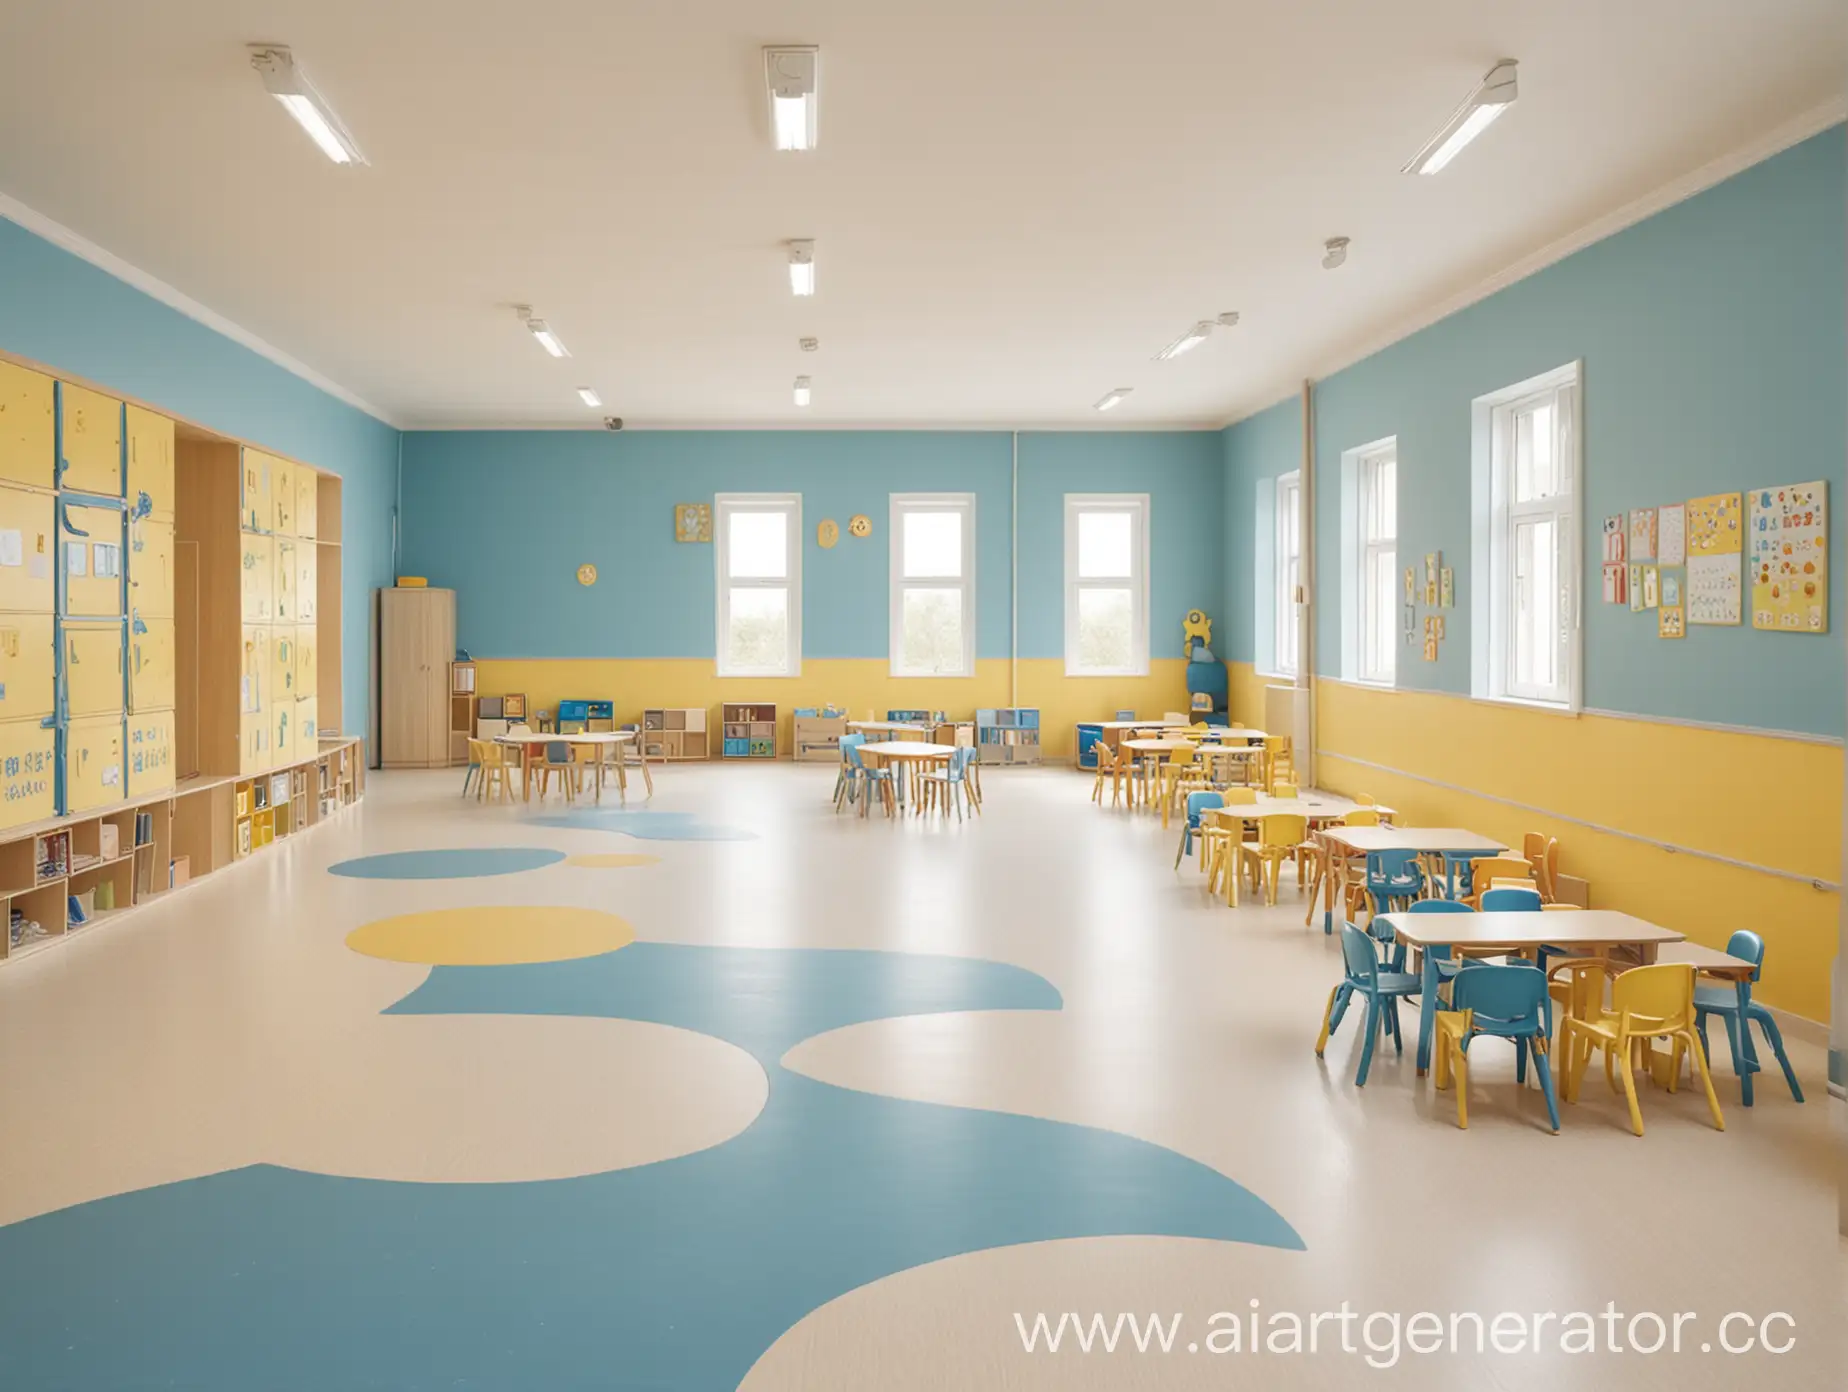 Интерьер детского сада в бежевых, голубых, желтых тонах. Большое помещение